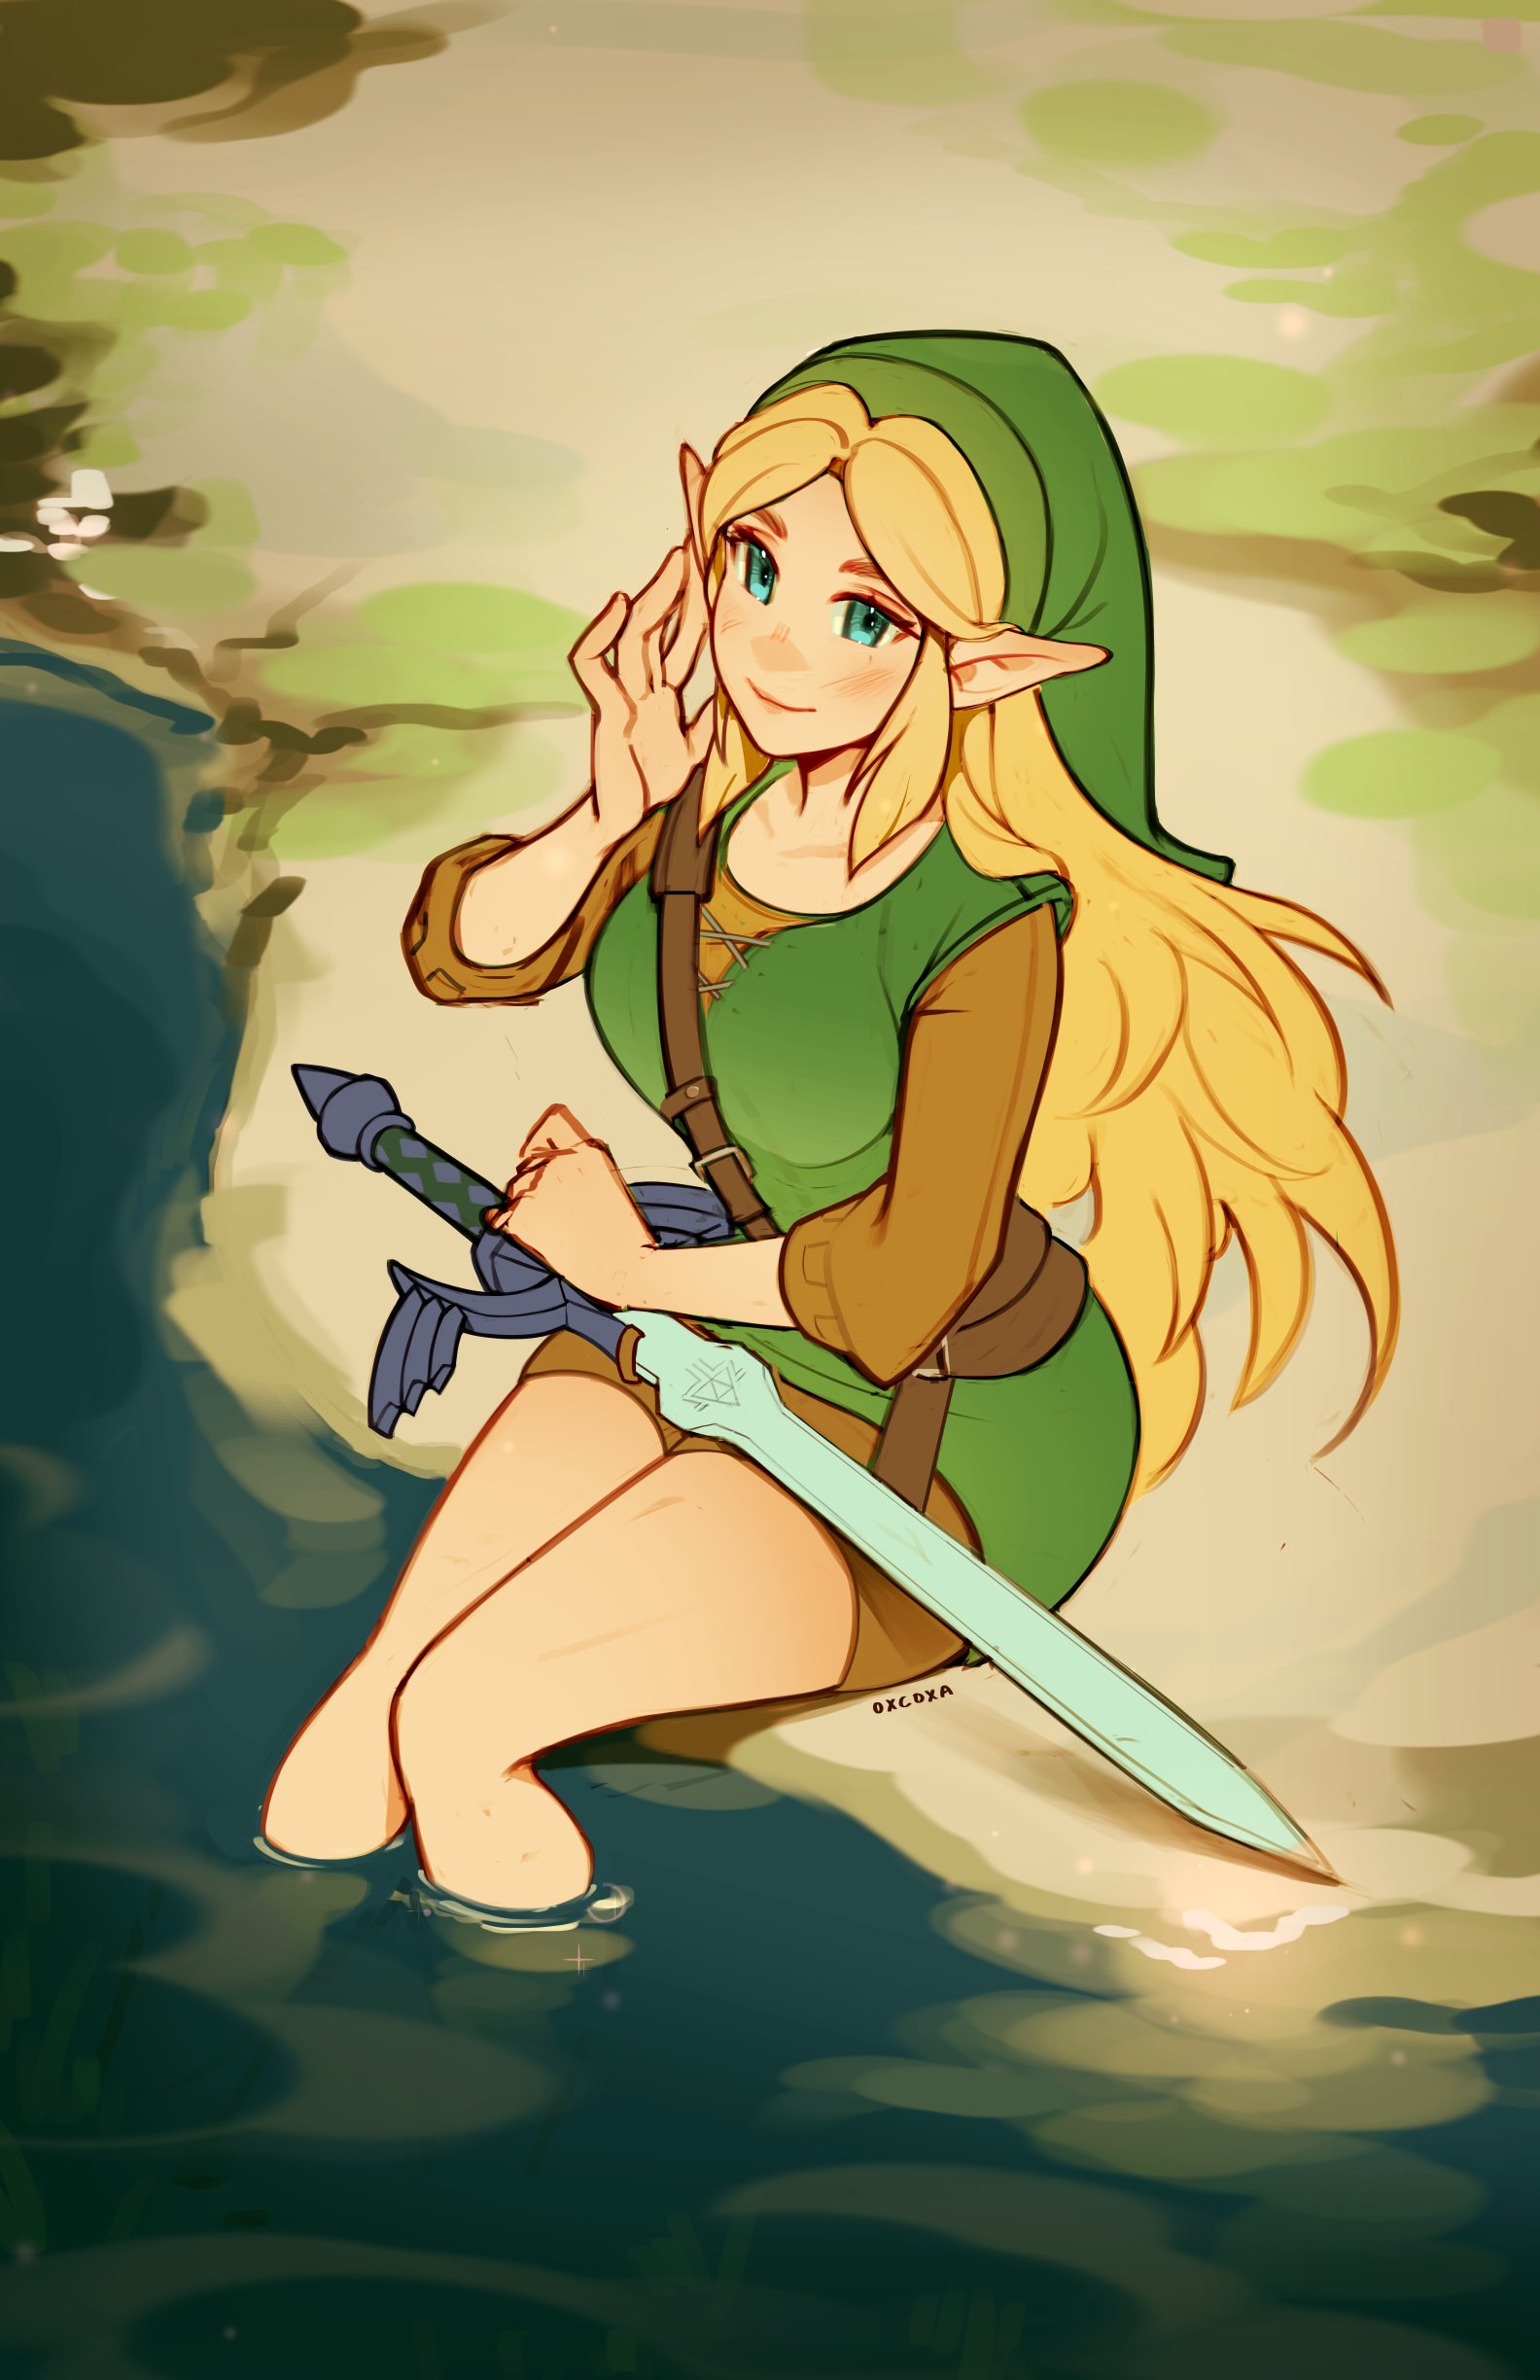 Link - The Legend of Zelda